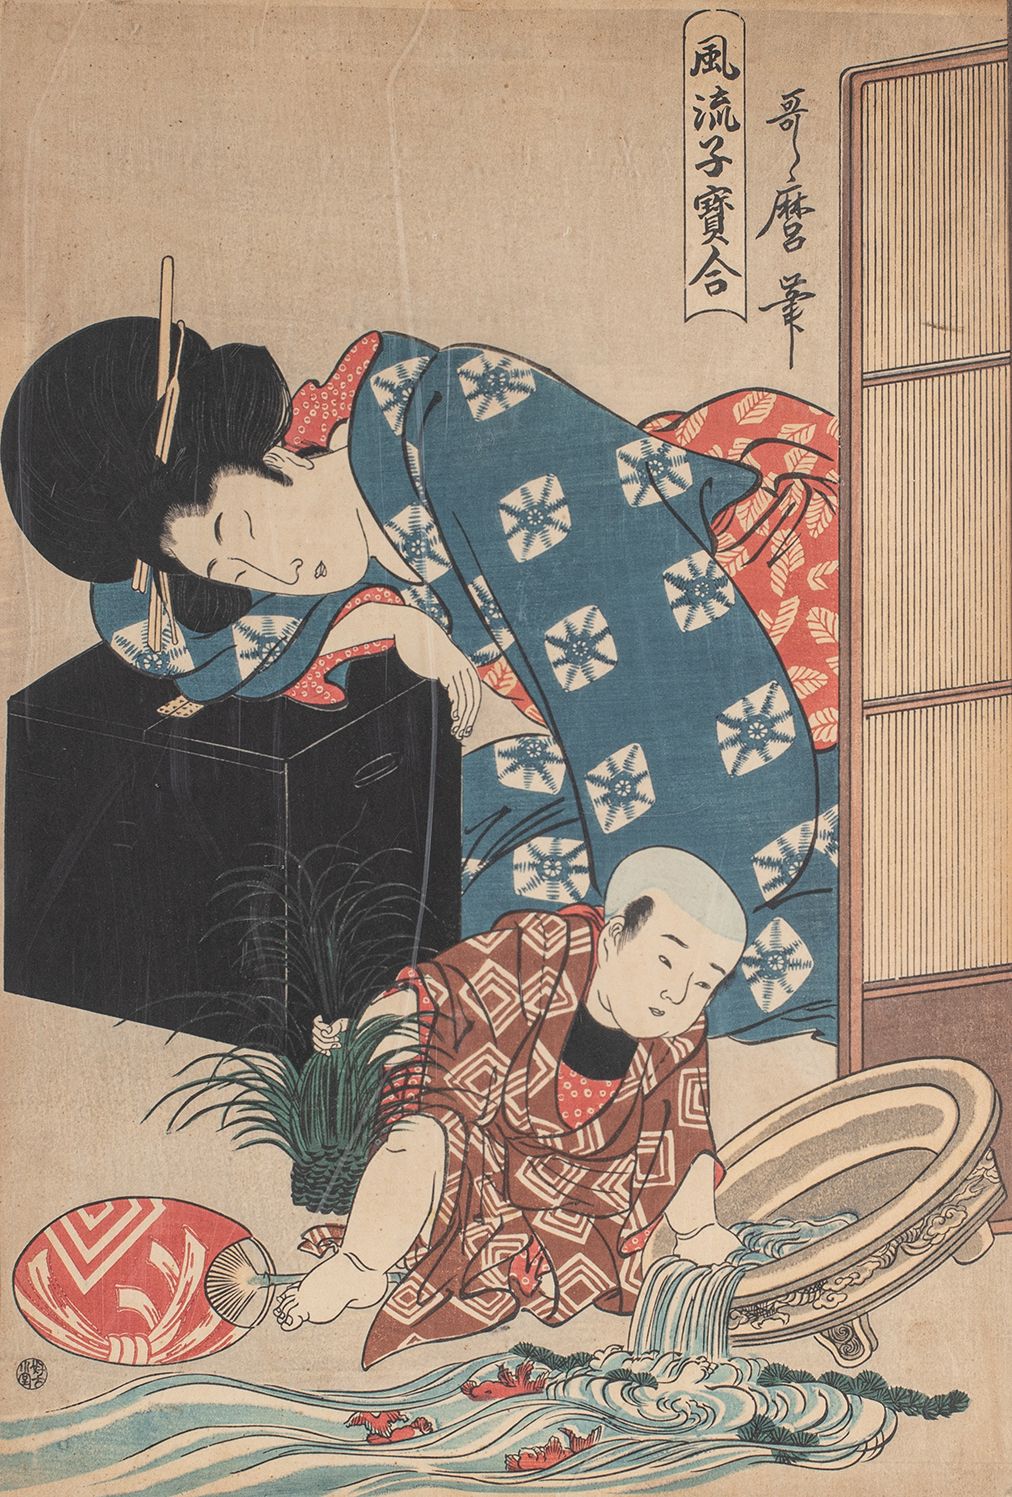 Null 
Stampa di Utamaro.

Copia del 20° secolo

Formato Oban.